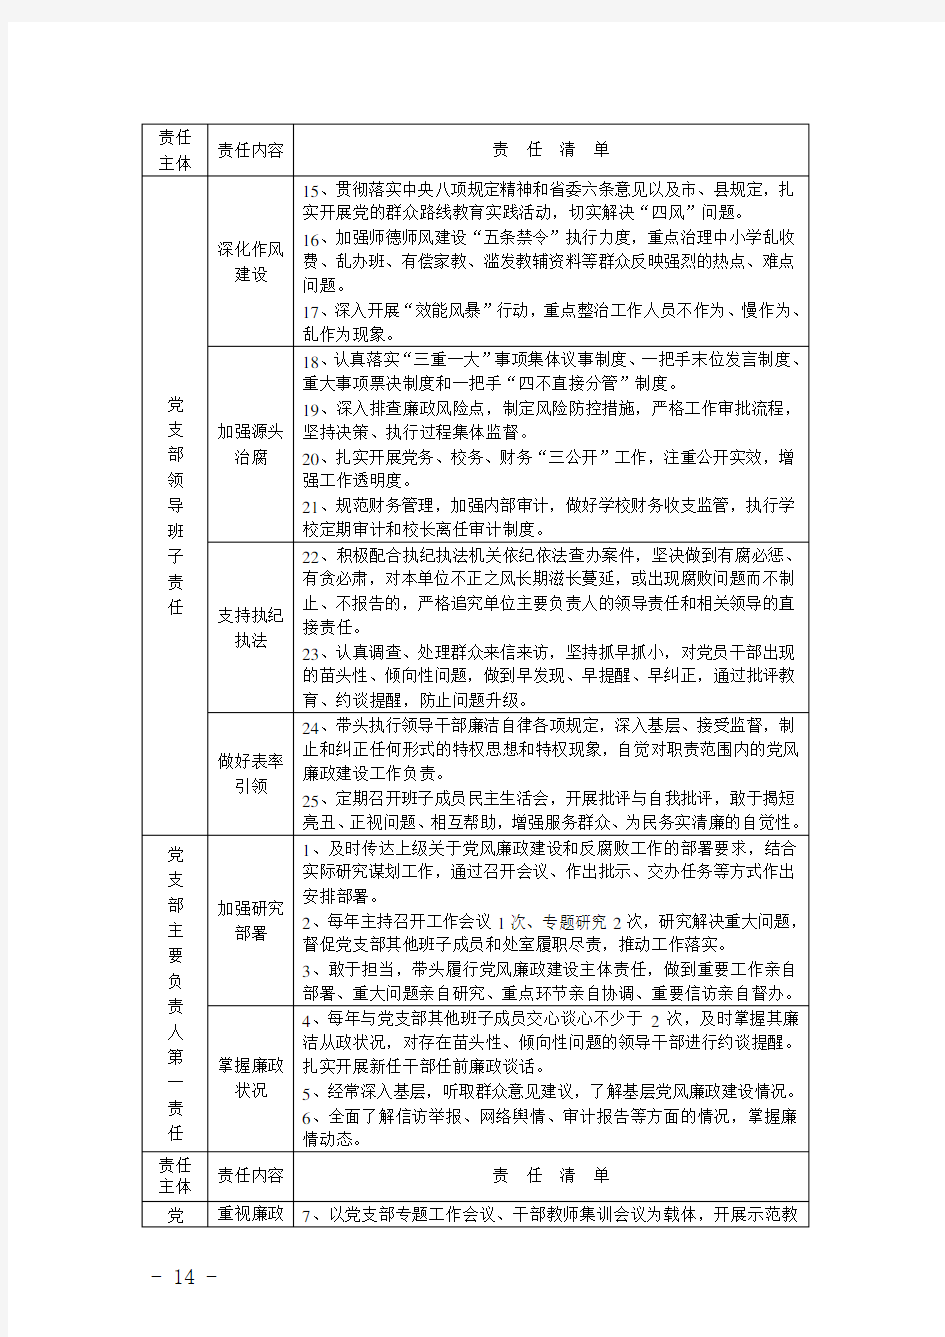 京山县绀弩中学党支部落实党风廉政建设主体责任工作清单